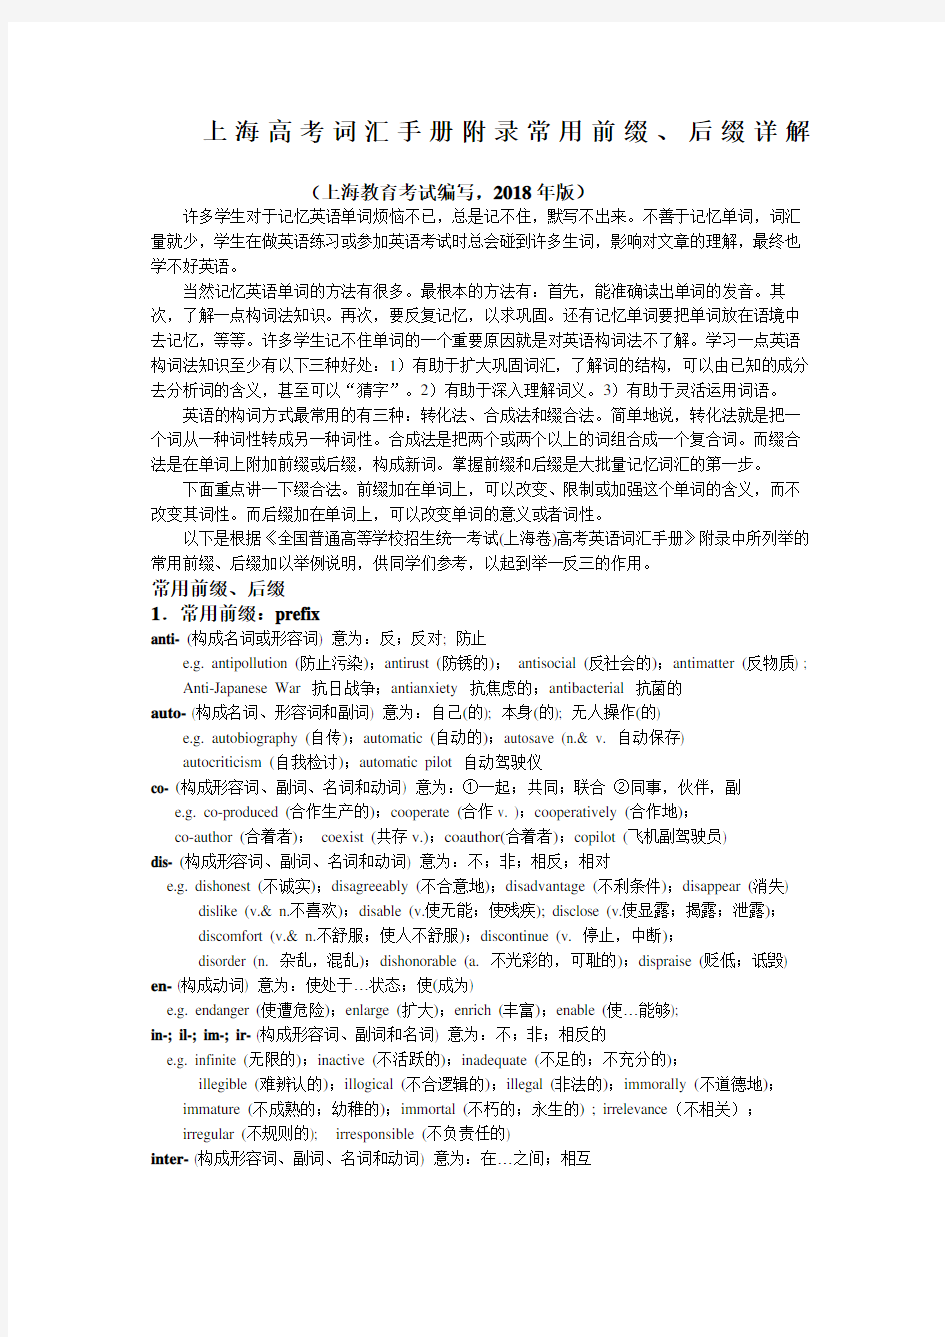 上海高考词汇手册附录常用前缀后缀详解上海教育考试院编写版